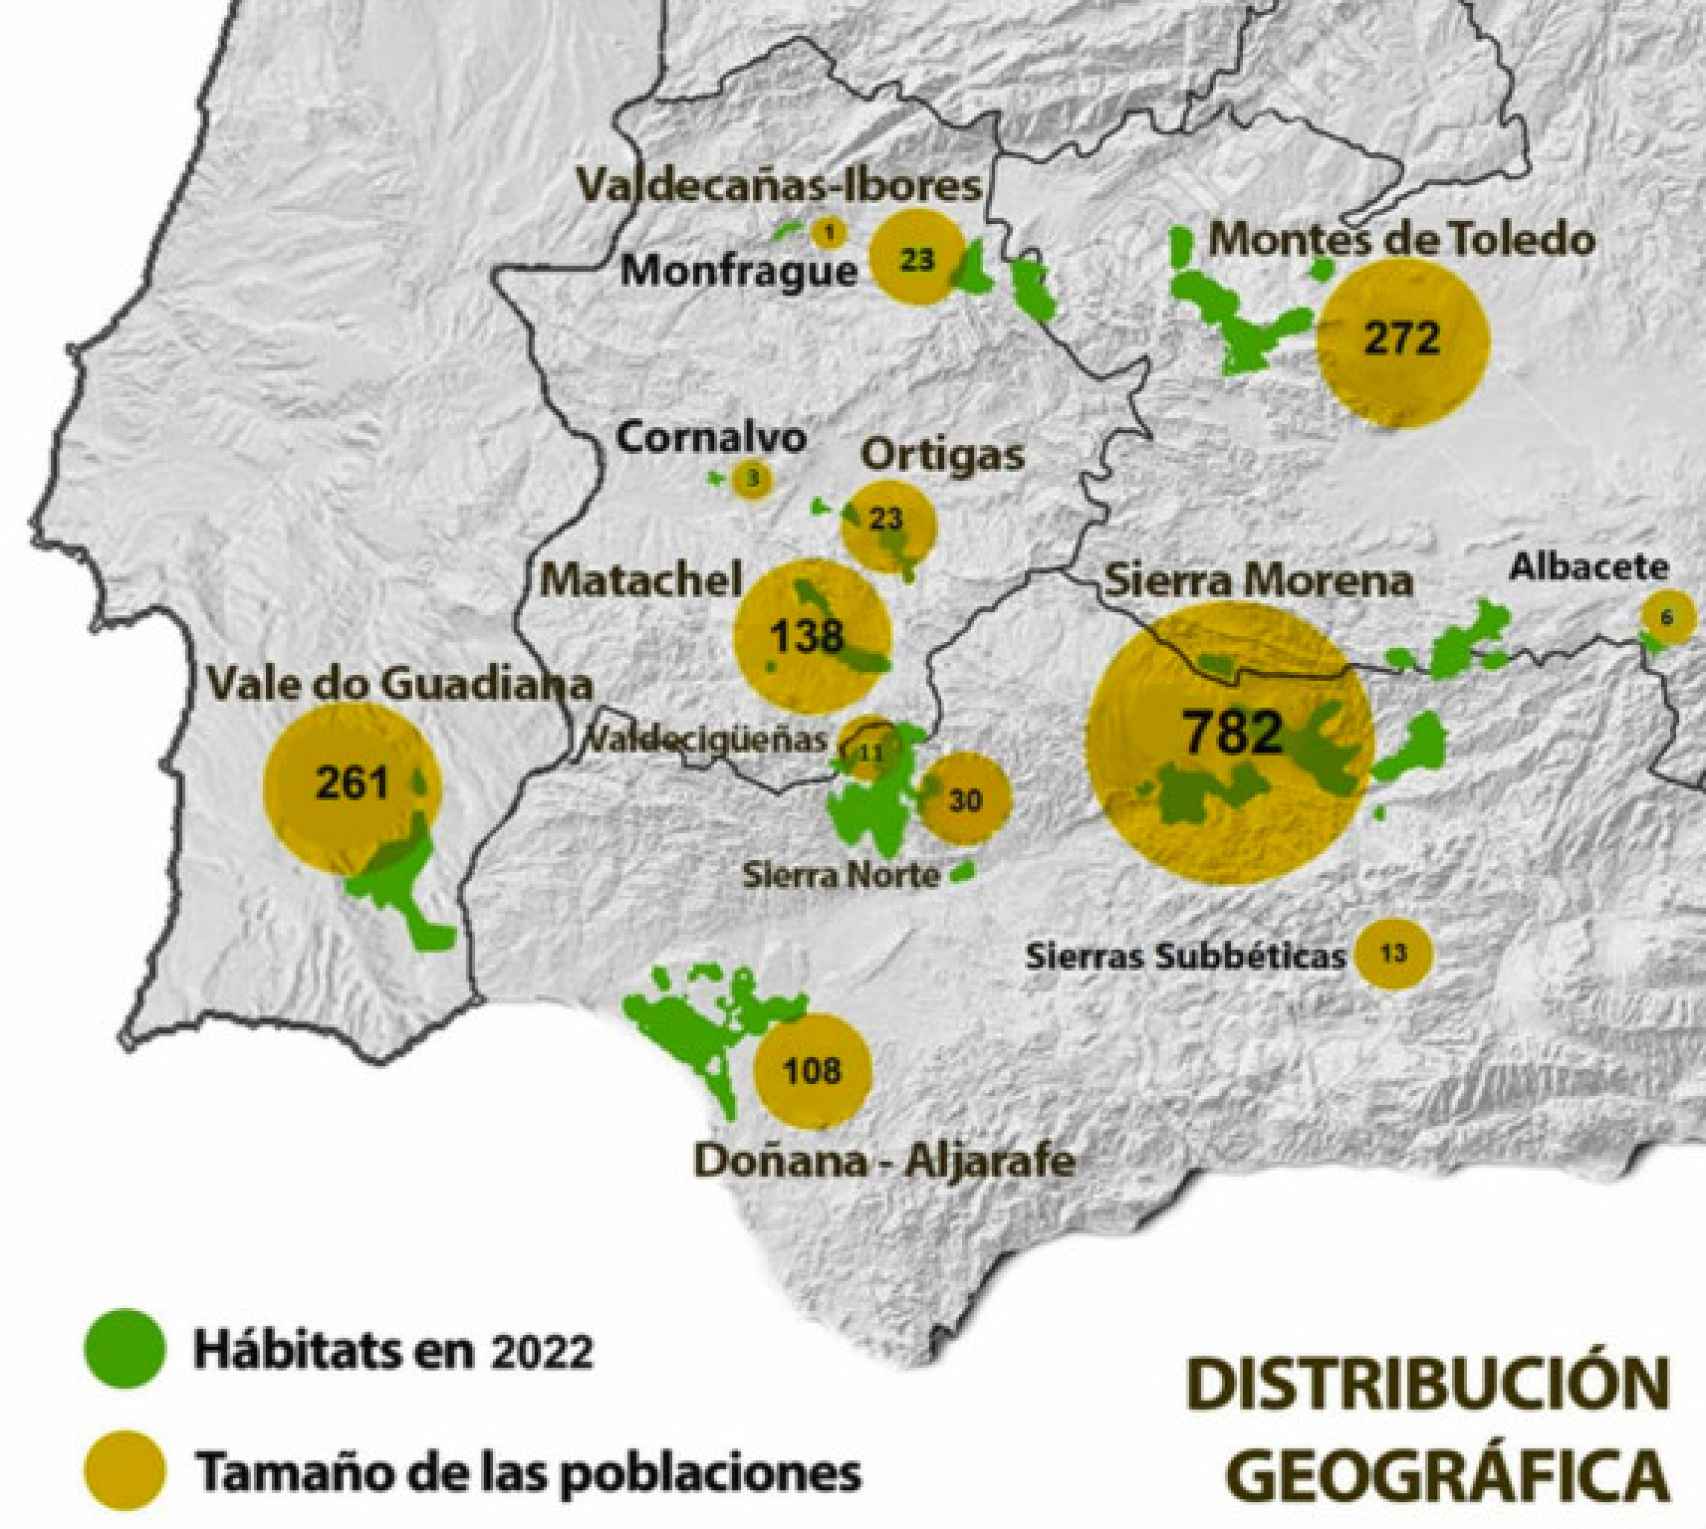 Distribución geográfica del lince ibérico en 2022